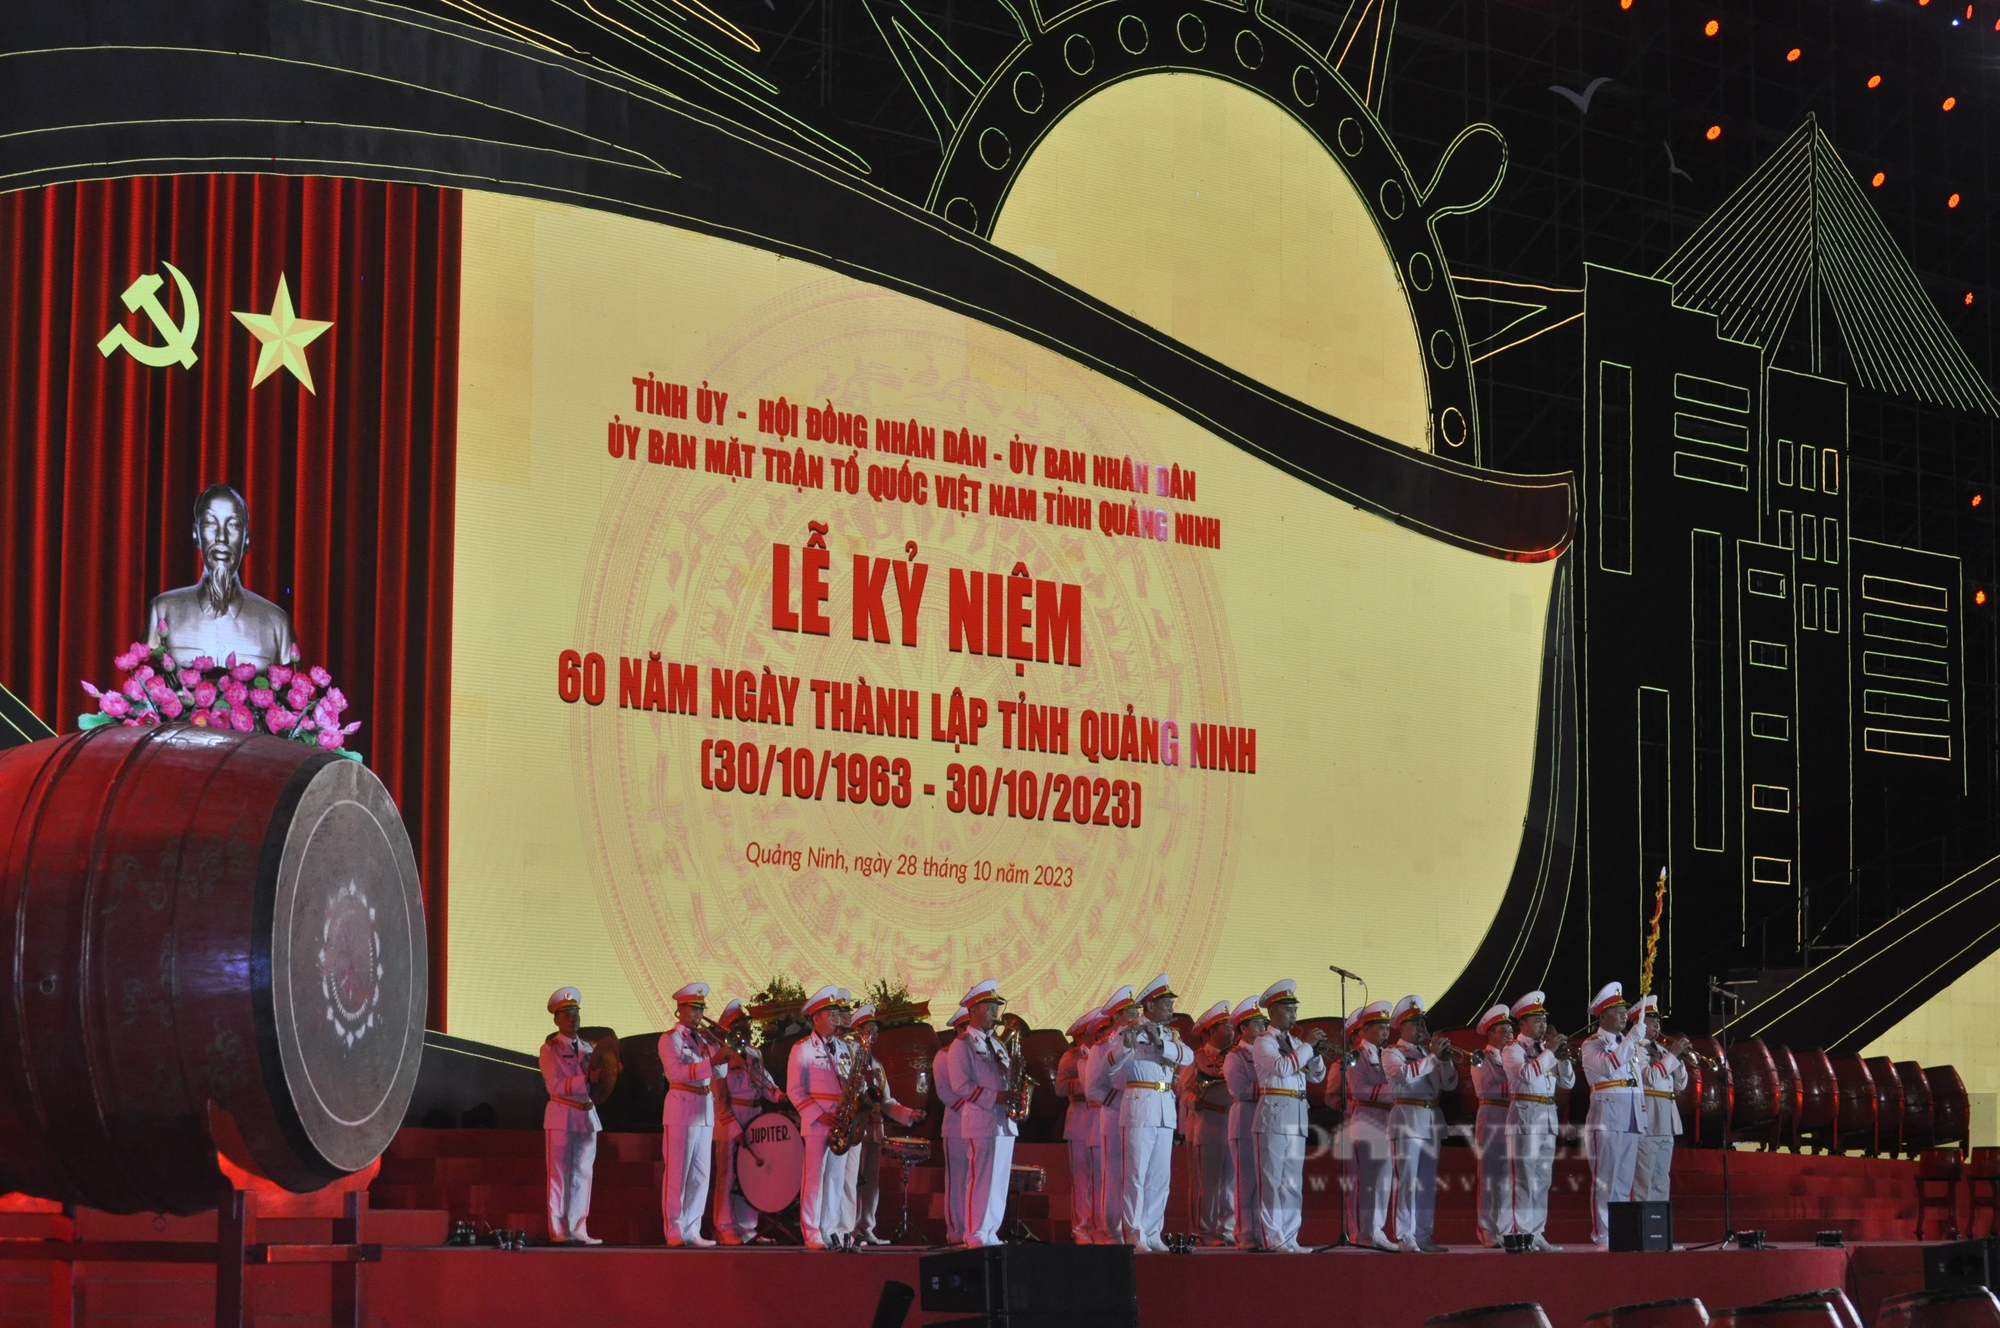 Mãn nhãn với màn trống hội lớn nhất Việt Nam trong lễ kỷ niệm 60 năm Ngày thành lập tỉnh Quảng Ninh - Ảnh 1.